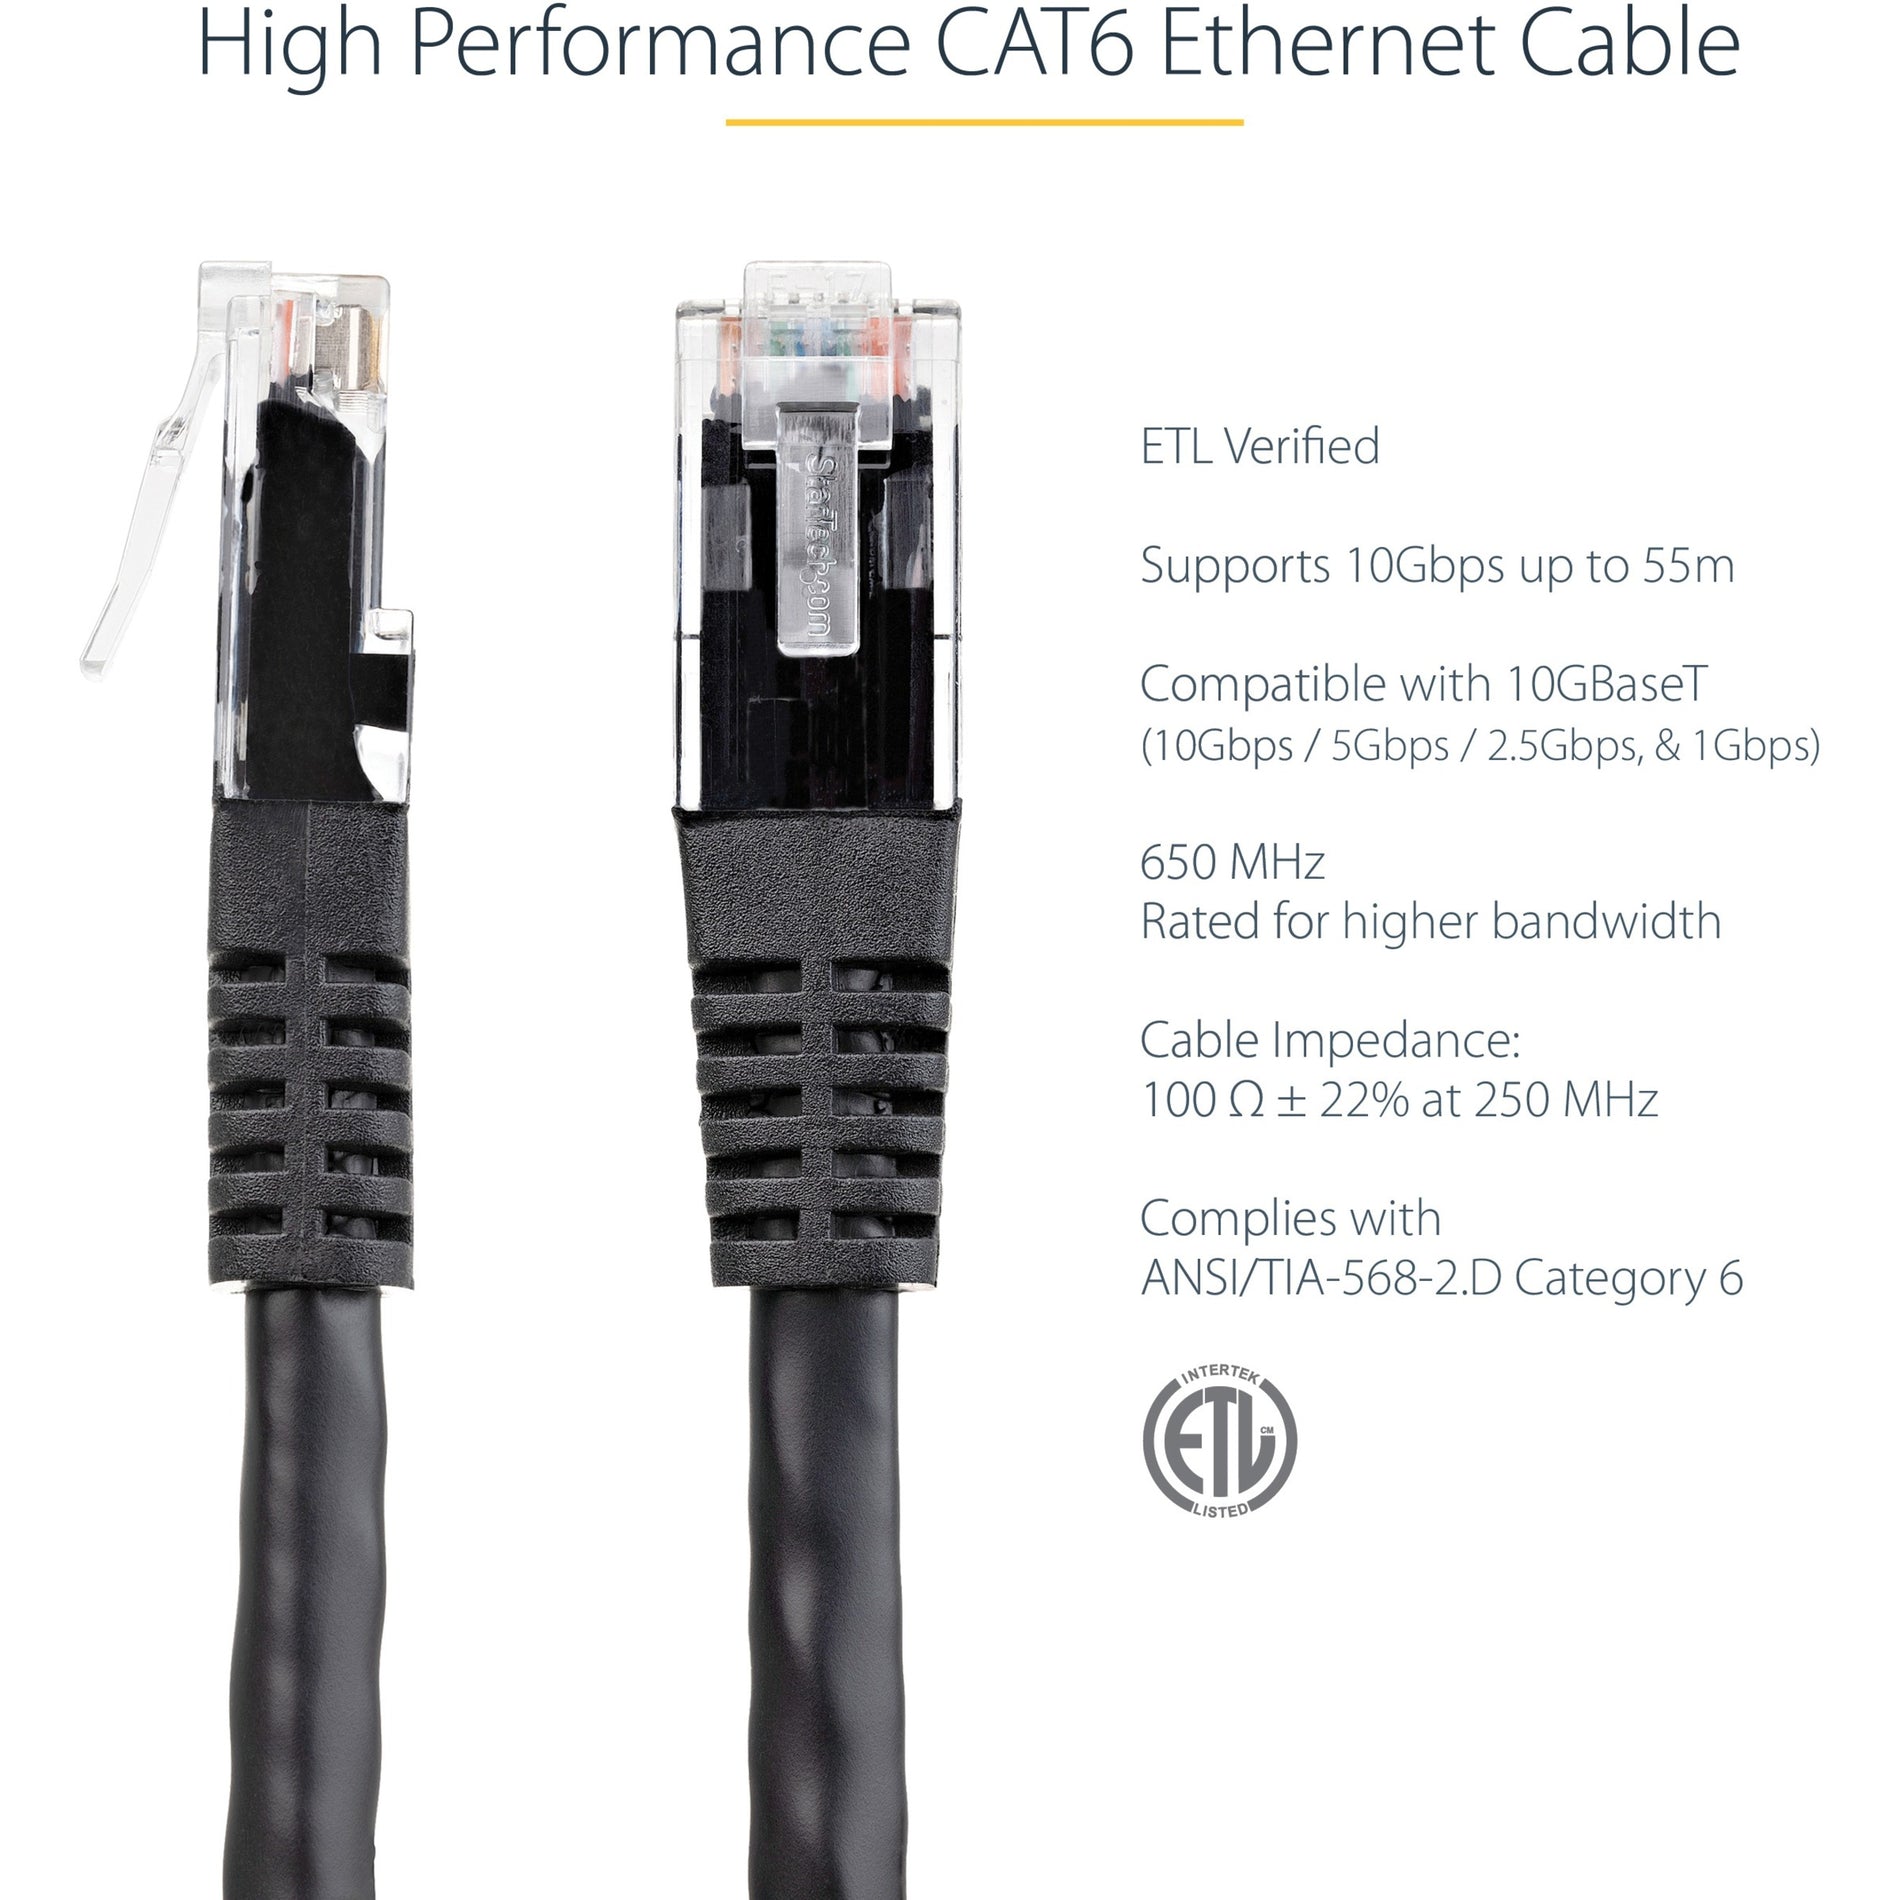 StarTech.com C6PATCH100BK 100ft Black Cat6 UTP Patch Cable ETL Verified, Lifetime Warranty, 10 Gbit/s Data Transfer Rate, PoE, Corrosion Resistant